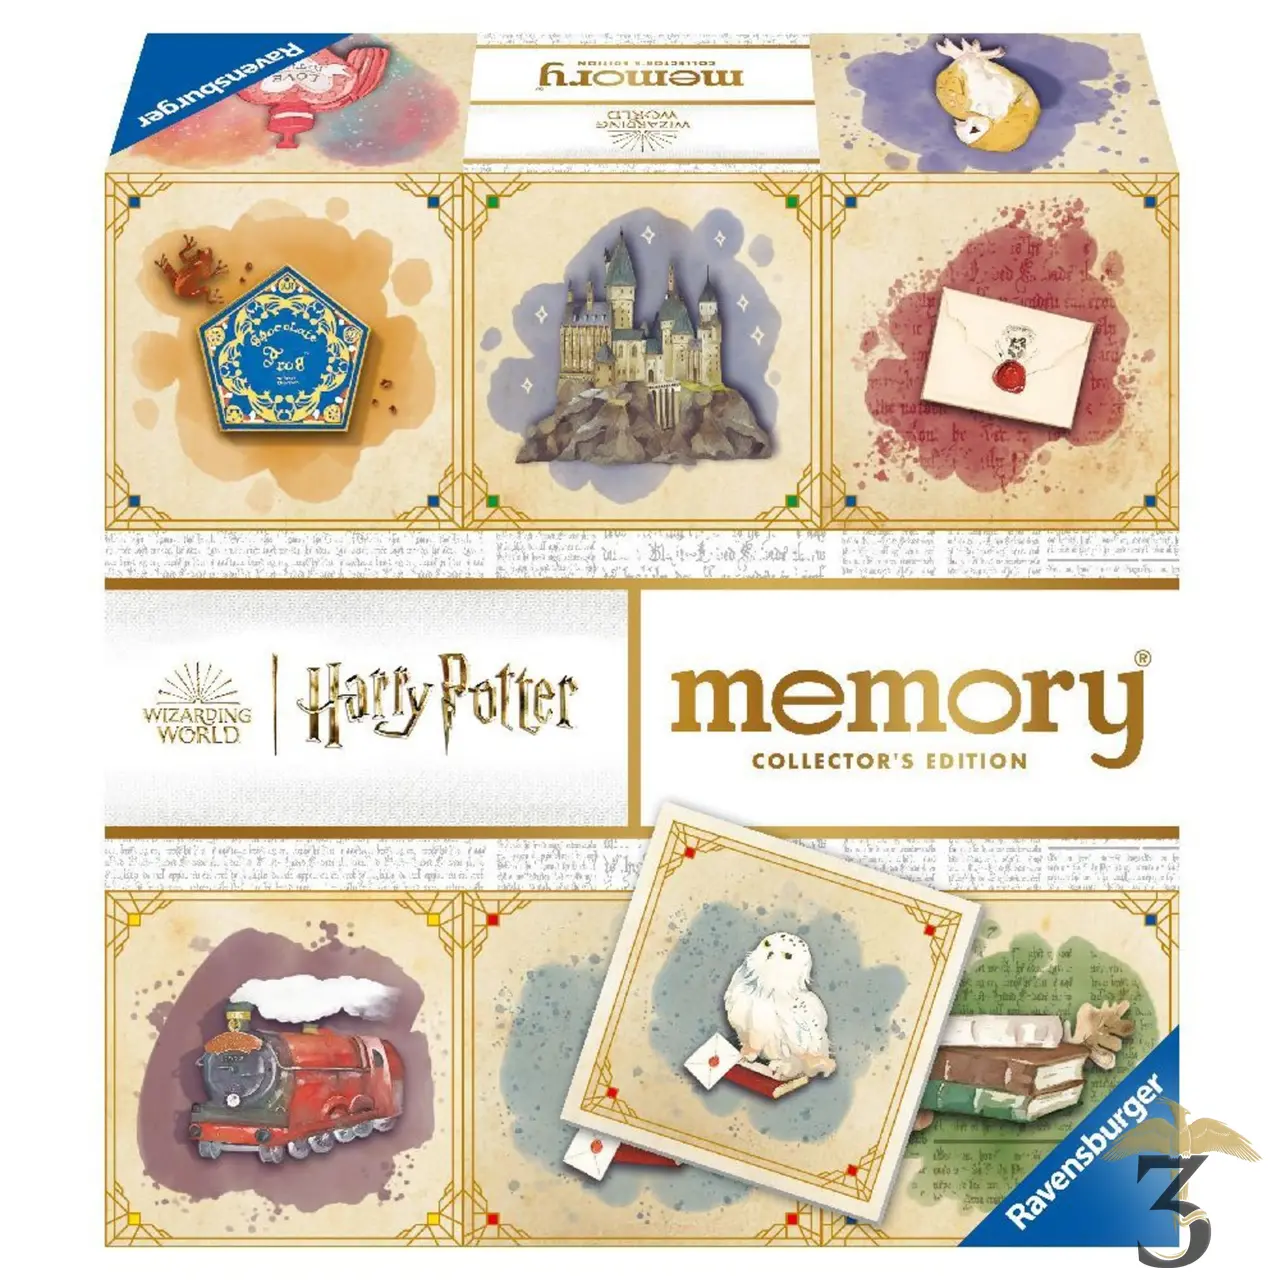 Harry potter collectors memory - Les Trois Reliques